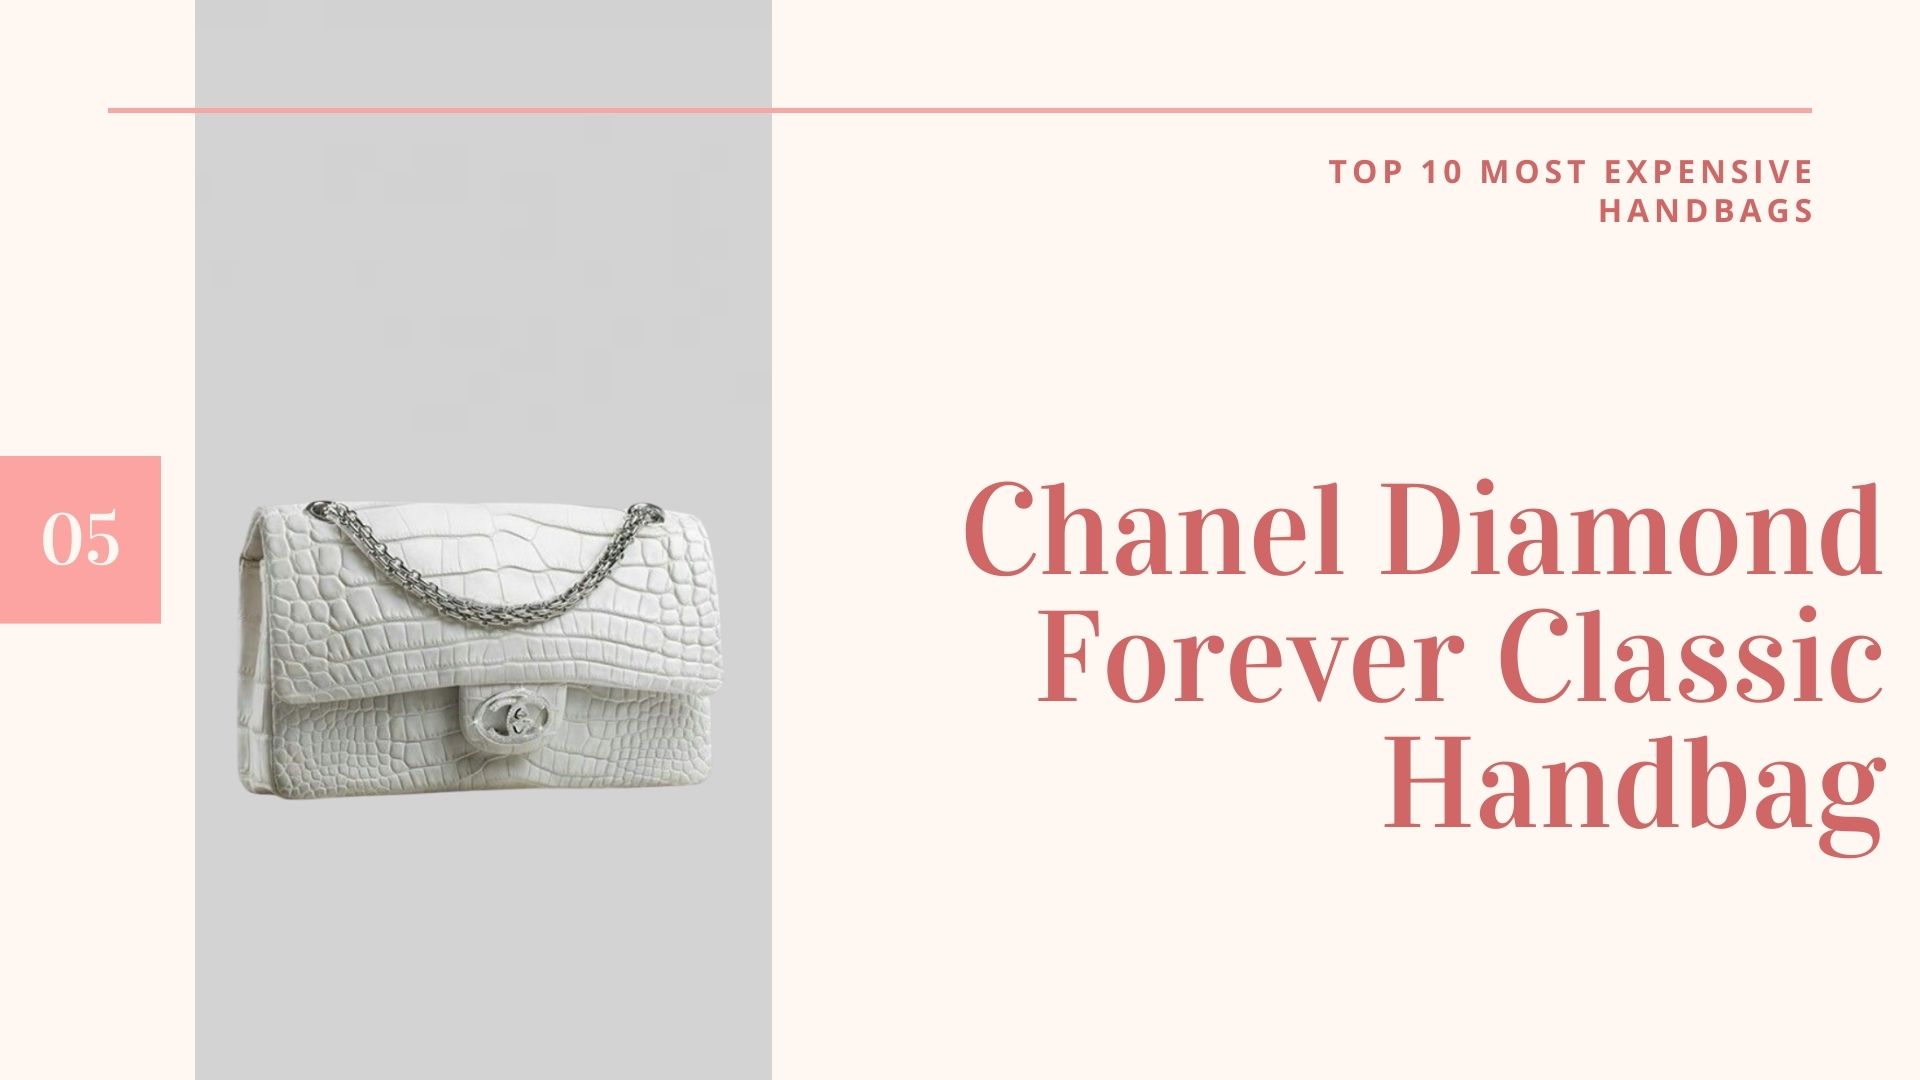 กระเป๋าที่แพงที่สุดในโลก - Chanel Diamond Forever Classic Handbag-กระเป๋าที่แพงที่สุดในโลก -กระเป๋าราคาแพงที่สุดในโลก-กระเป๋าราคาแพงที่สุดในโลก-10กระเป๋าแพงที่สุดในโลก-กระเป๋าแพงที่สุดในโลก ราคา